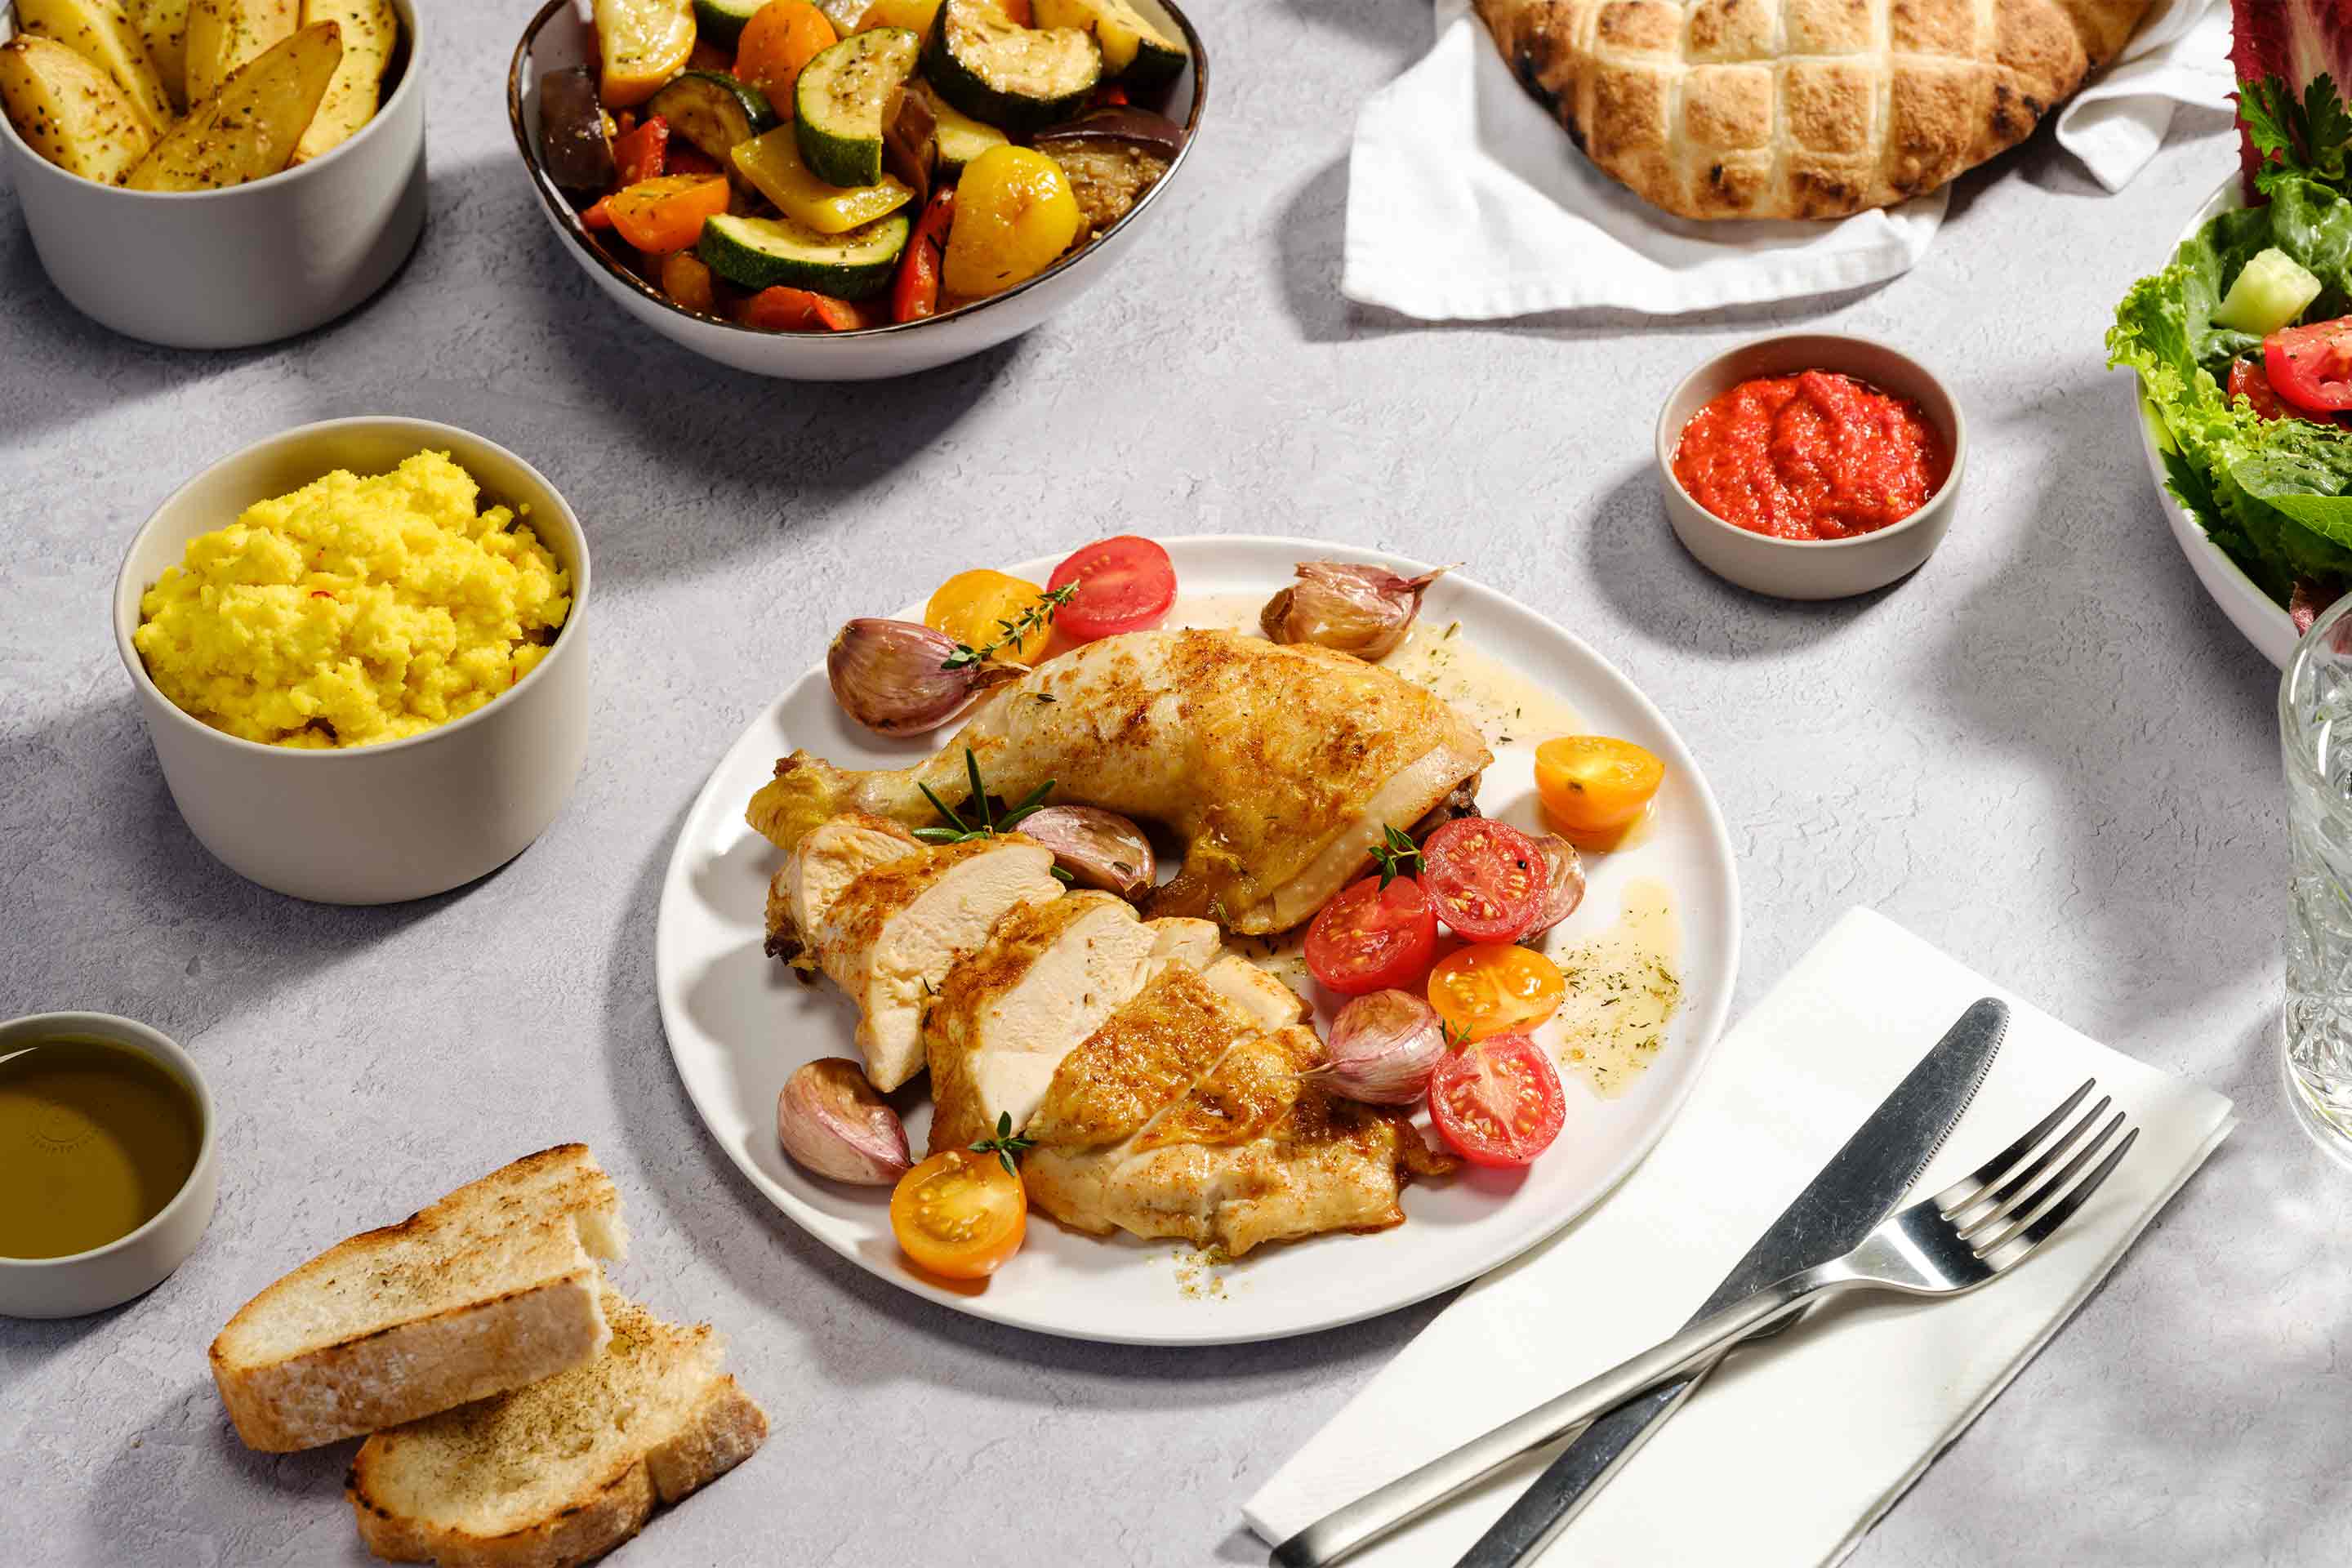 Пилешко бутче и гърди сервирани в чиния със зеленчуци на фурна. Поднесени с още зеленчуци в купа, зелена салата и питка.